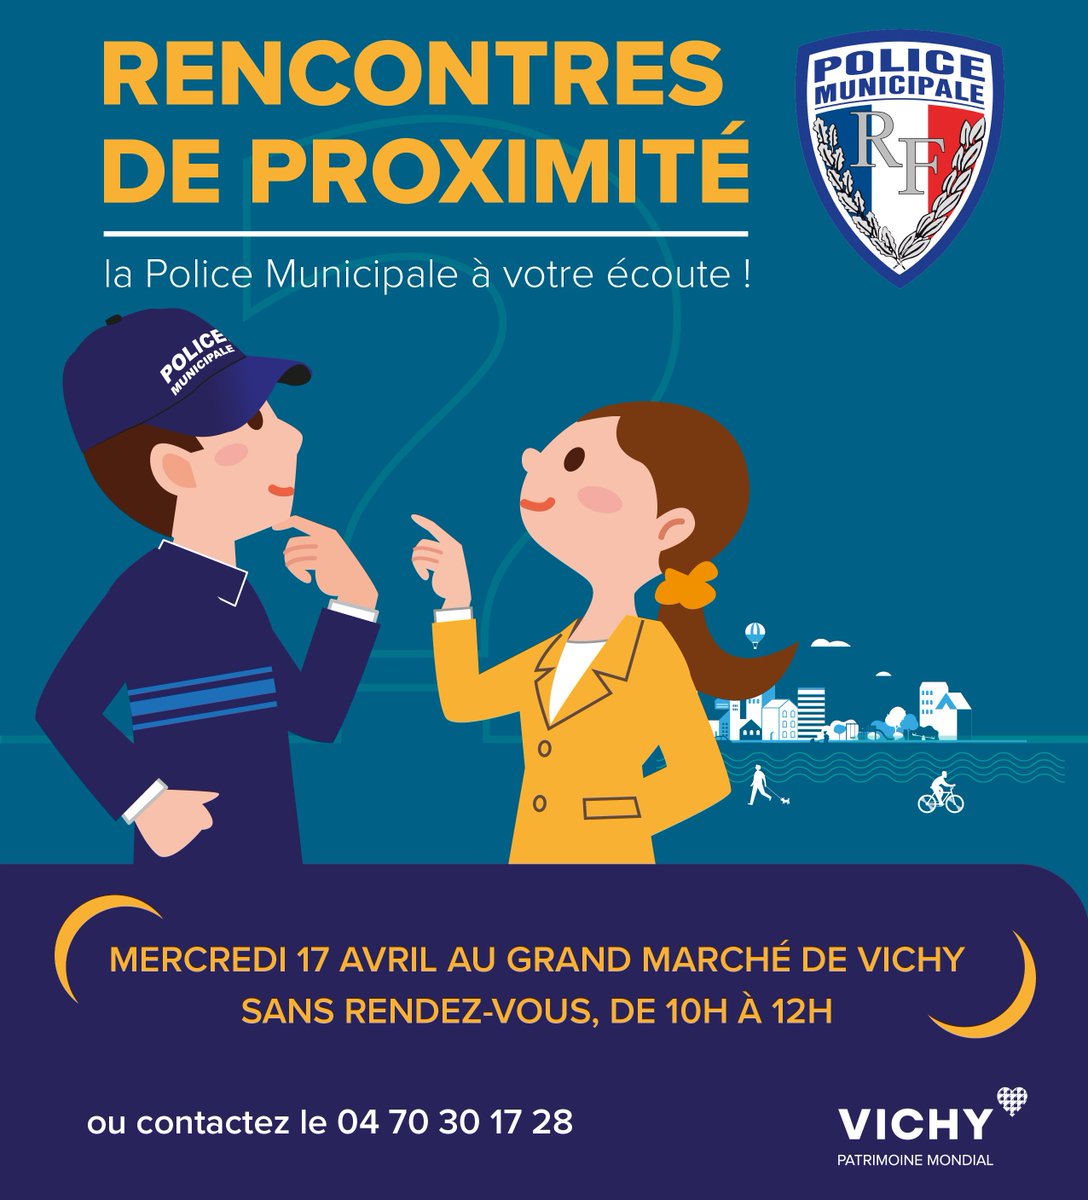 [#Proximité] 💬 Rendez-vous à la première rencontre avec la Police municipale ! Echangez avec eux sur votre quotidien. ⌚ Mercredi 17 avril de 10h à 12h 📍 Grand Marché de Vichy